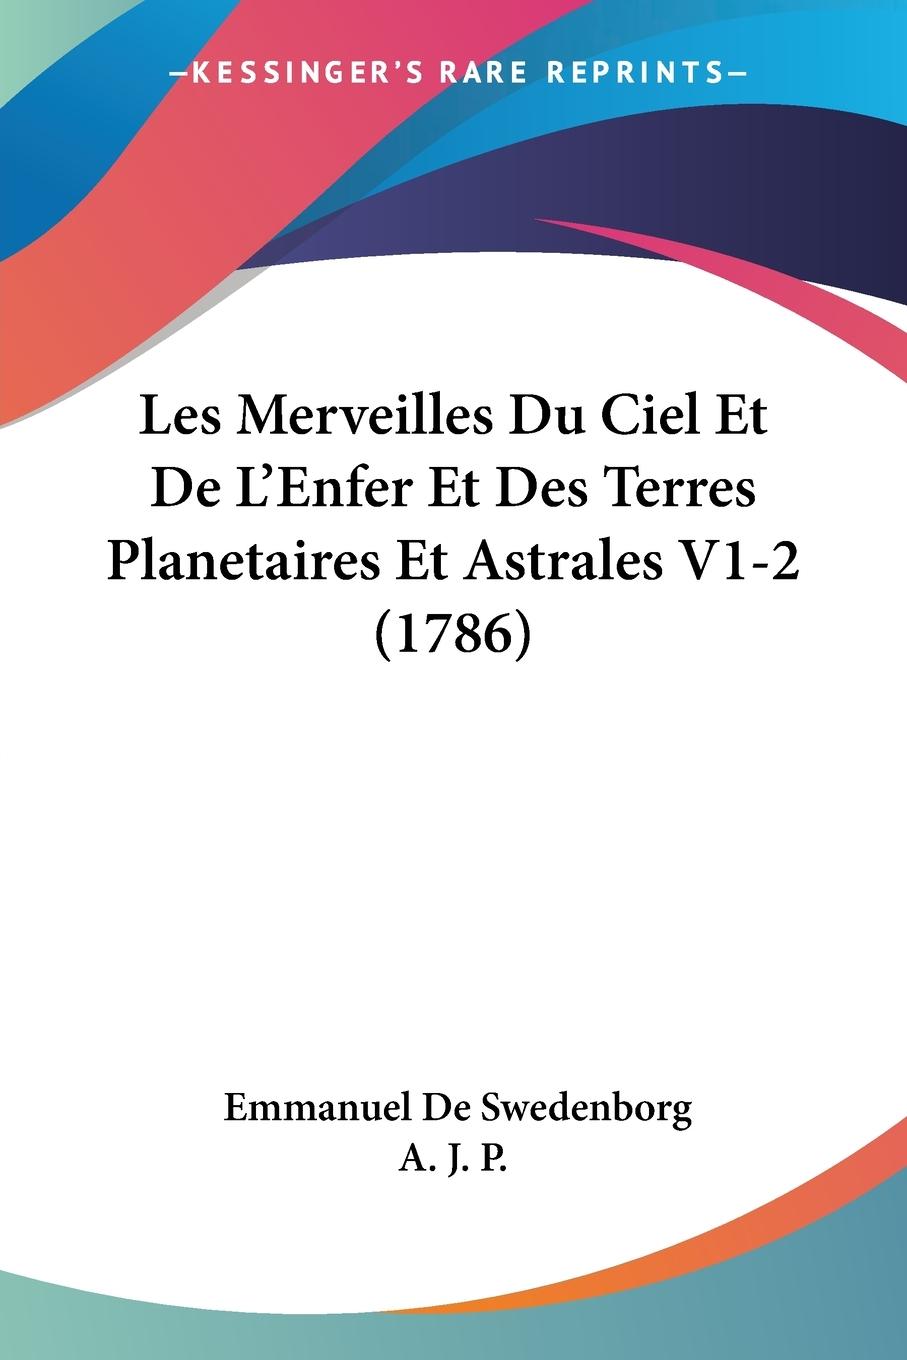 Les Merveilles Du Ciel Et De L Enfer Et Des Terres Planetaires Et Astrales V1-2 (1786) - De Swedenborg, Emmanuel